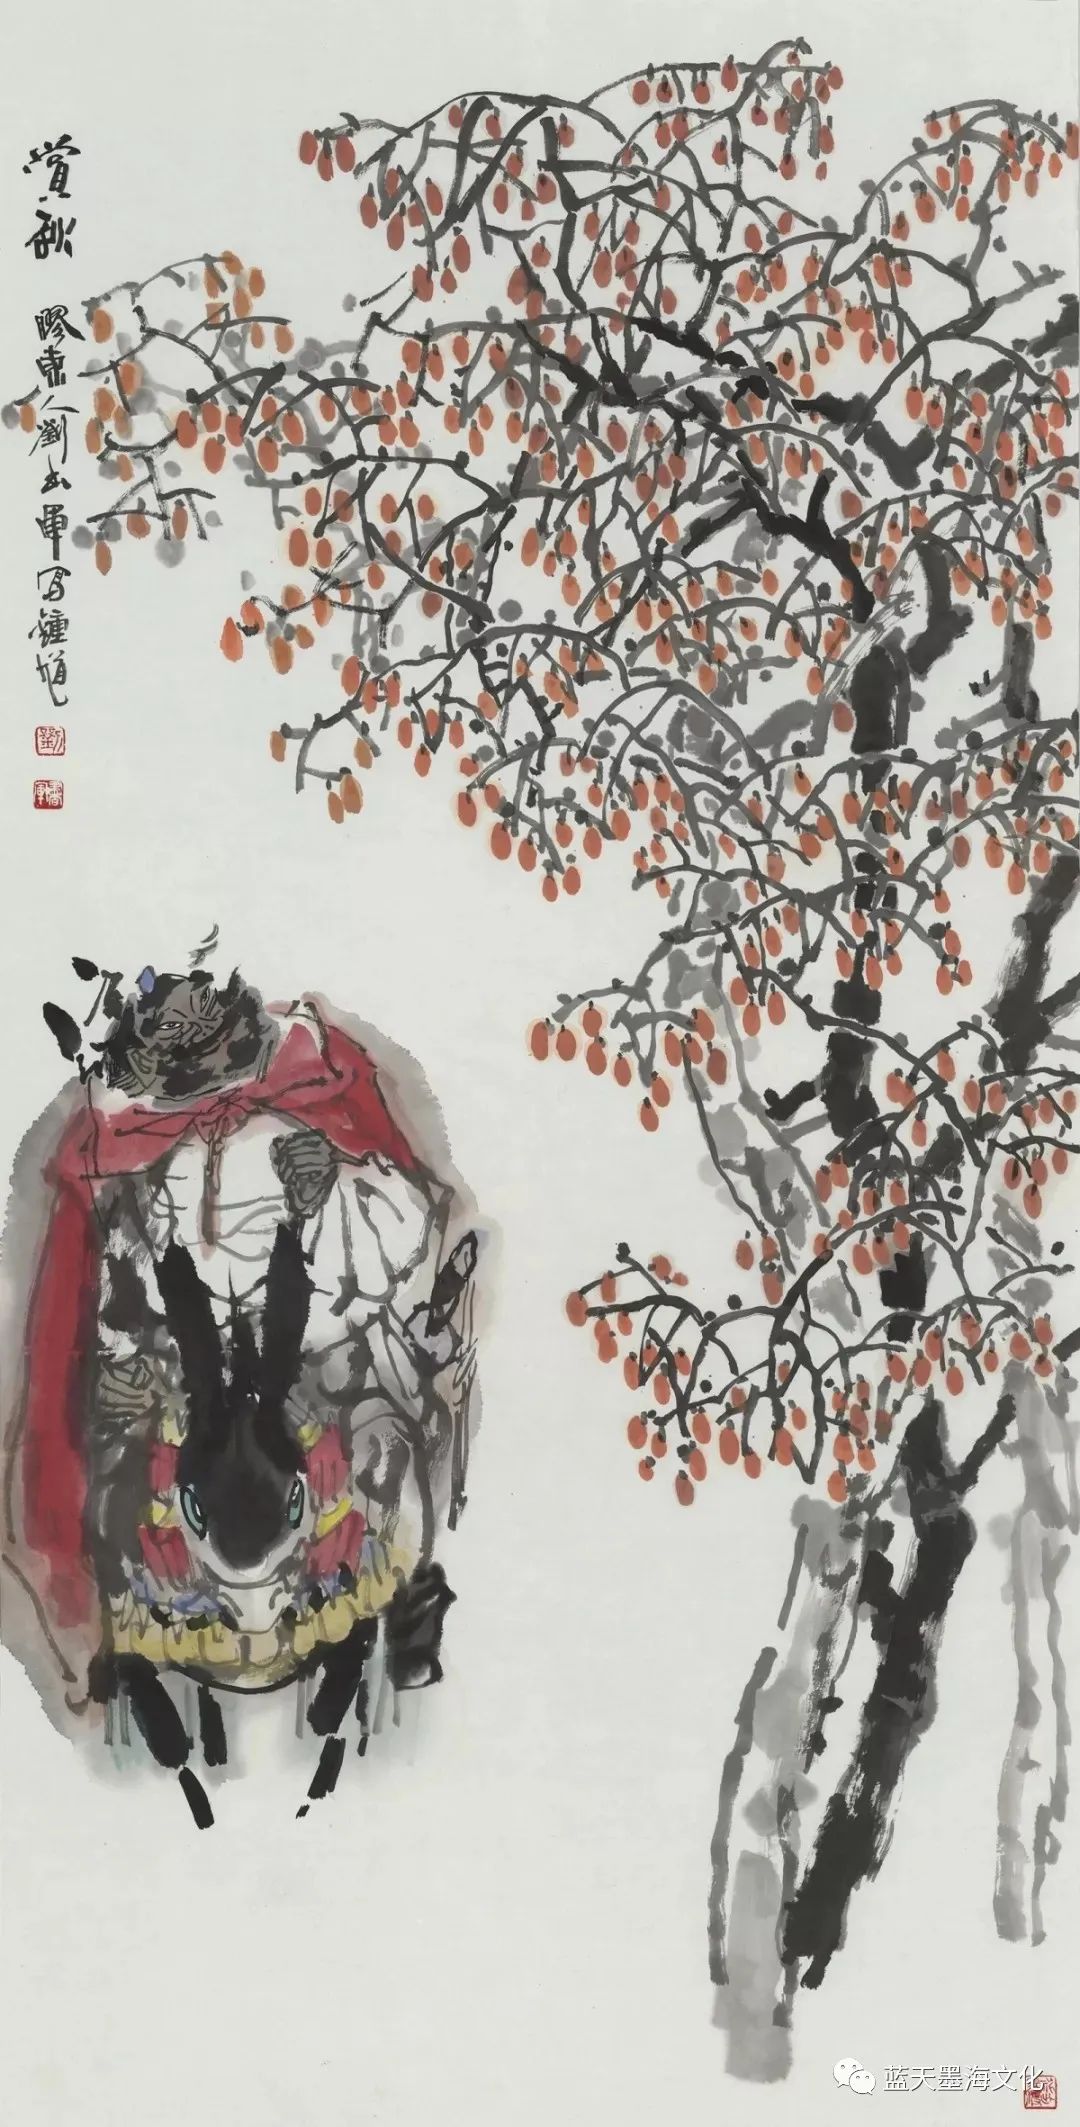 笔随时代 趣自生活——读著名画家刘书军的钟馗系列作品